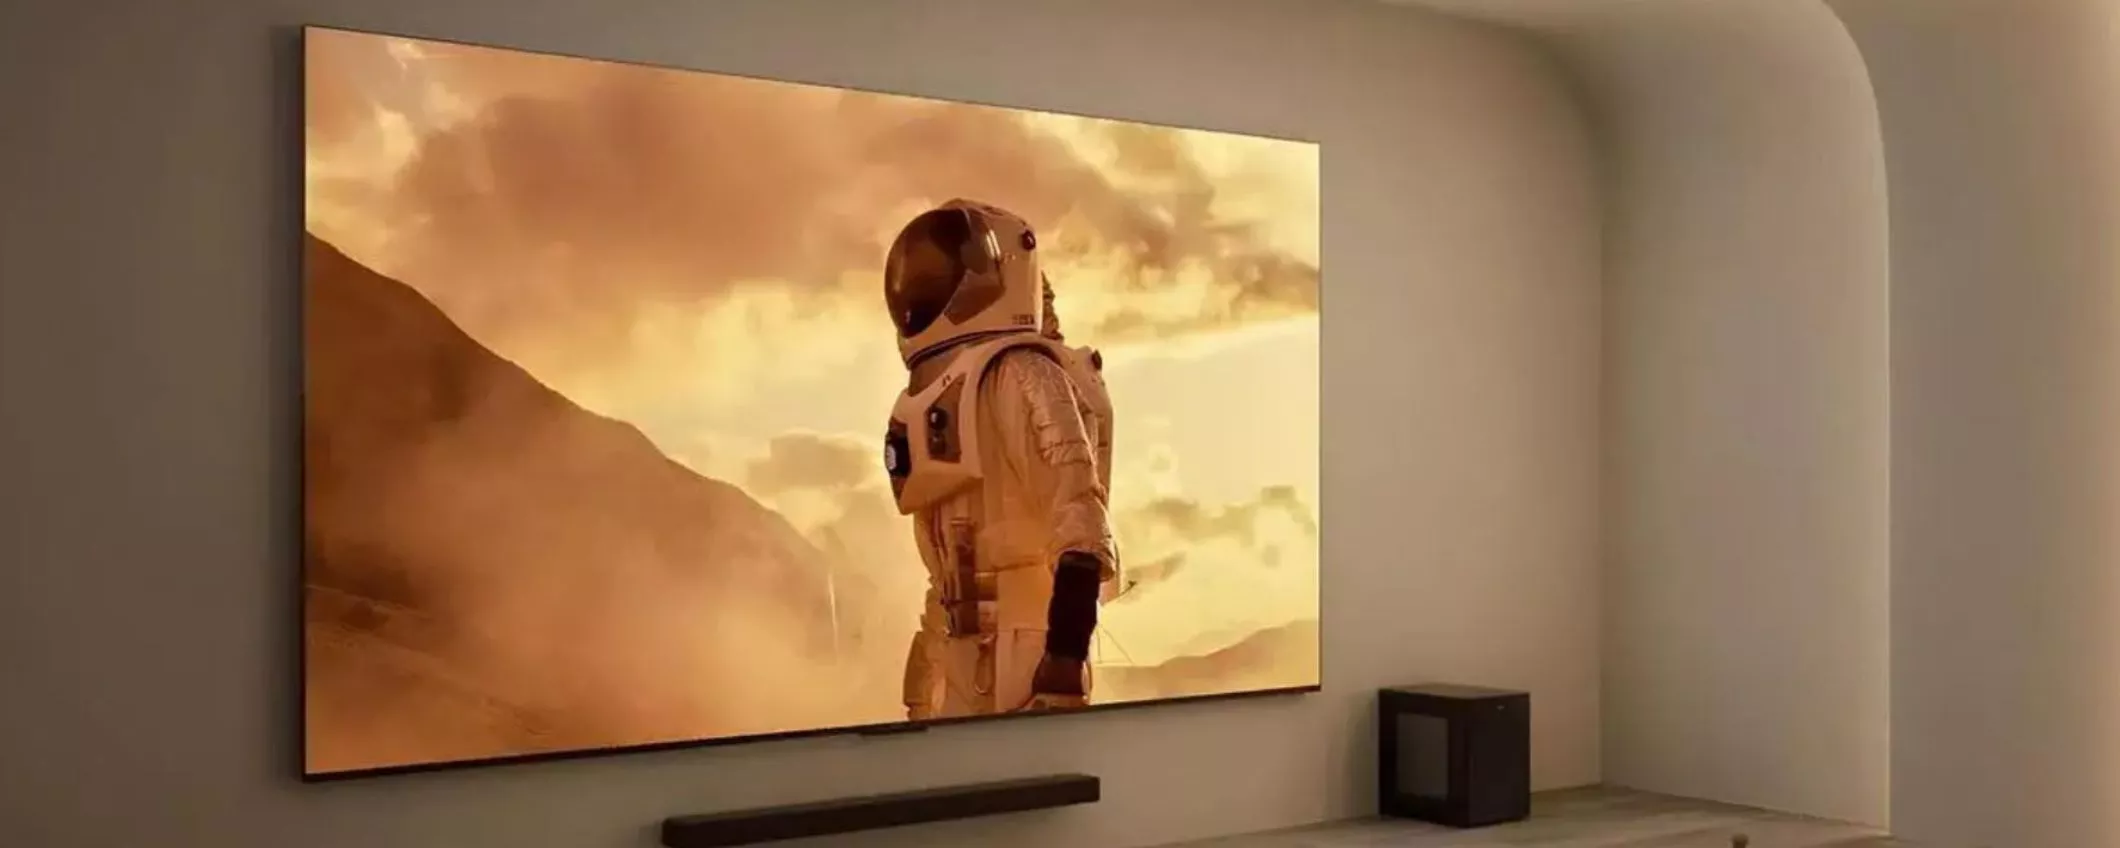 Il cinema in casa: Samsung e TCL puntano sugli schermi extra large